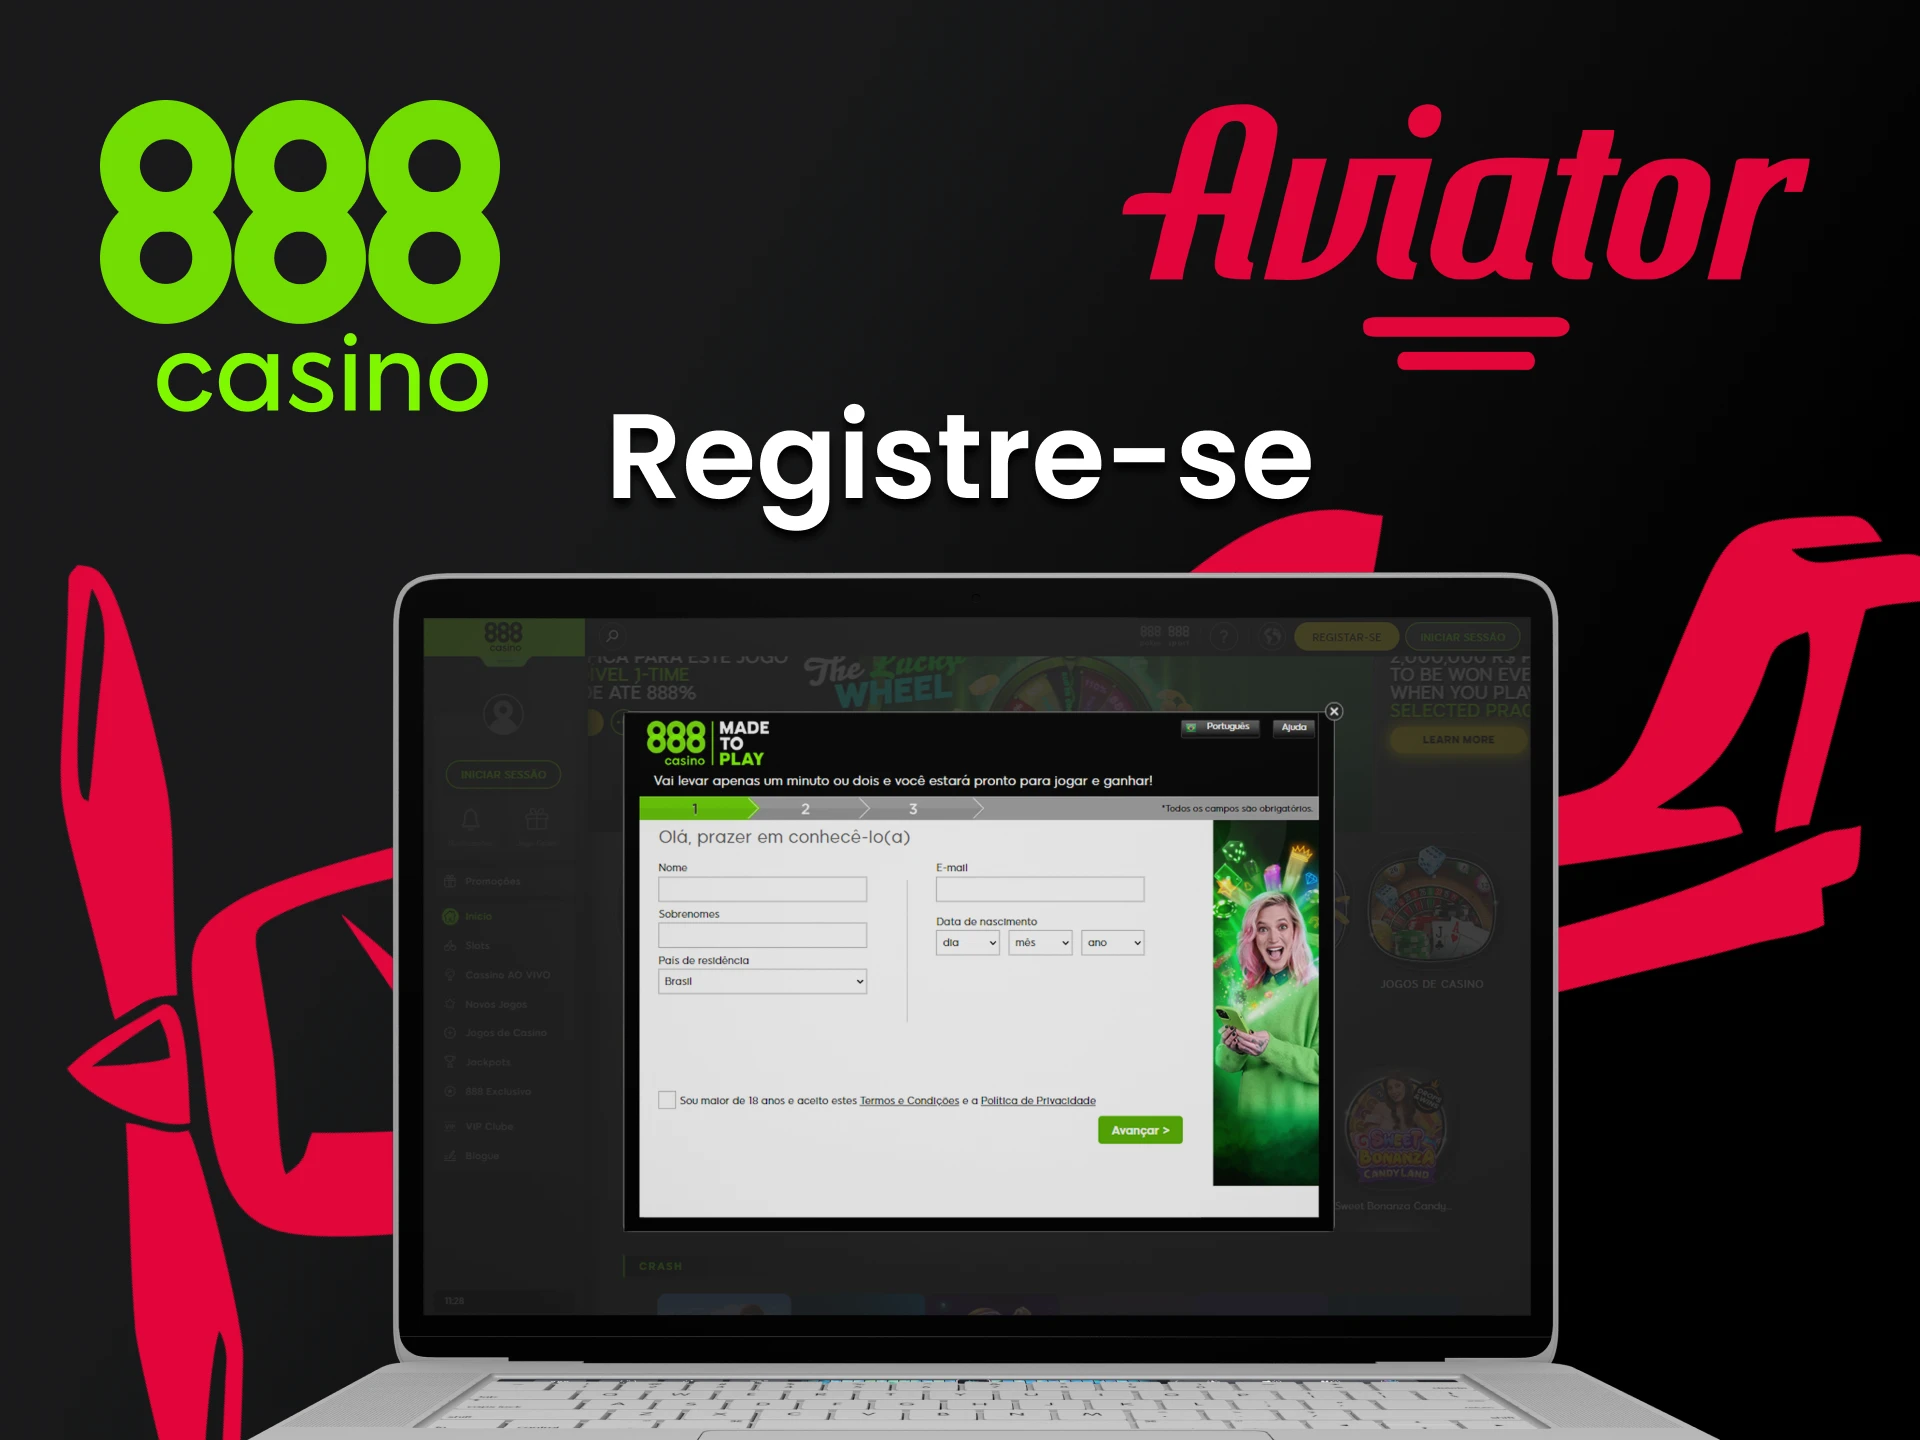 Registre-se no 888 casino para jogar Aviator.